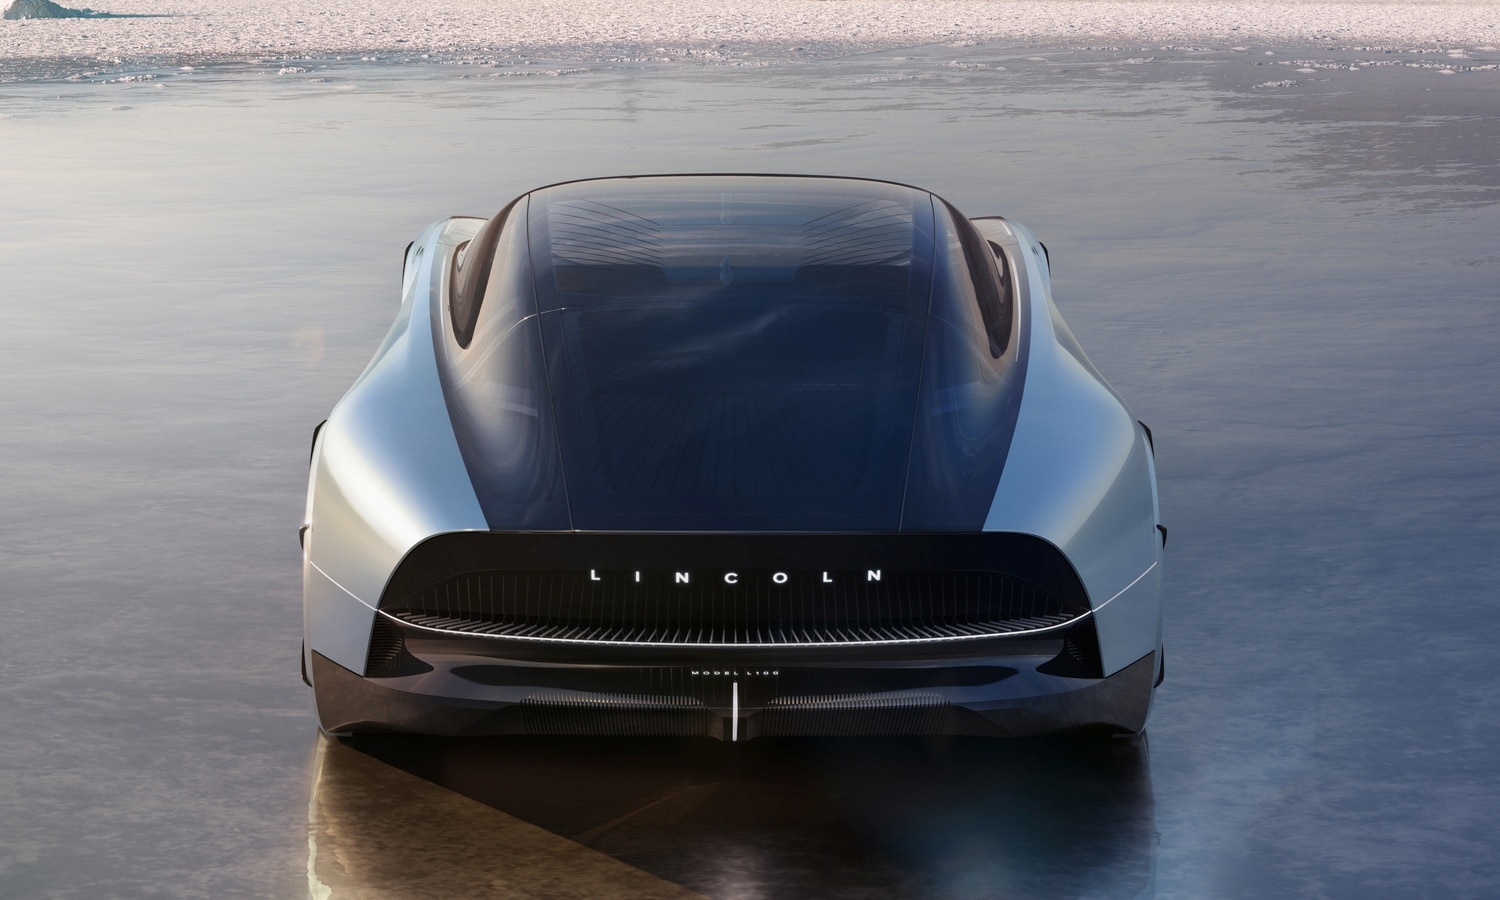 Lincoln L100 concept car exterior